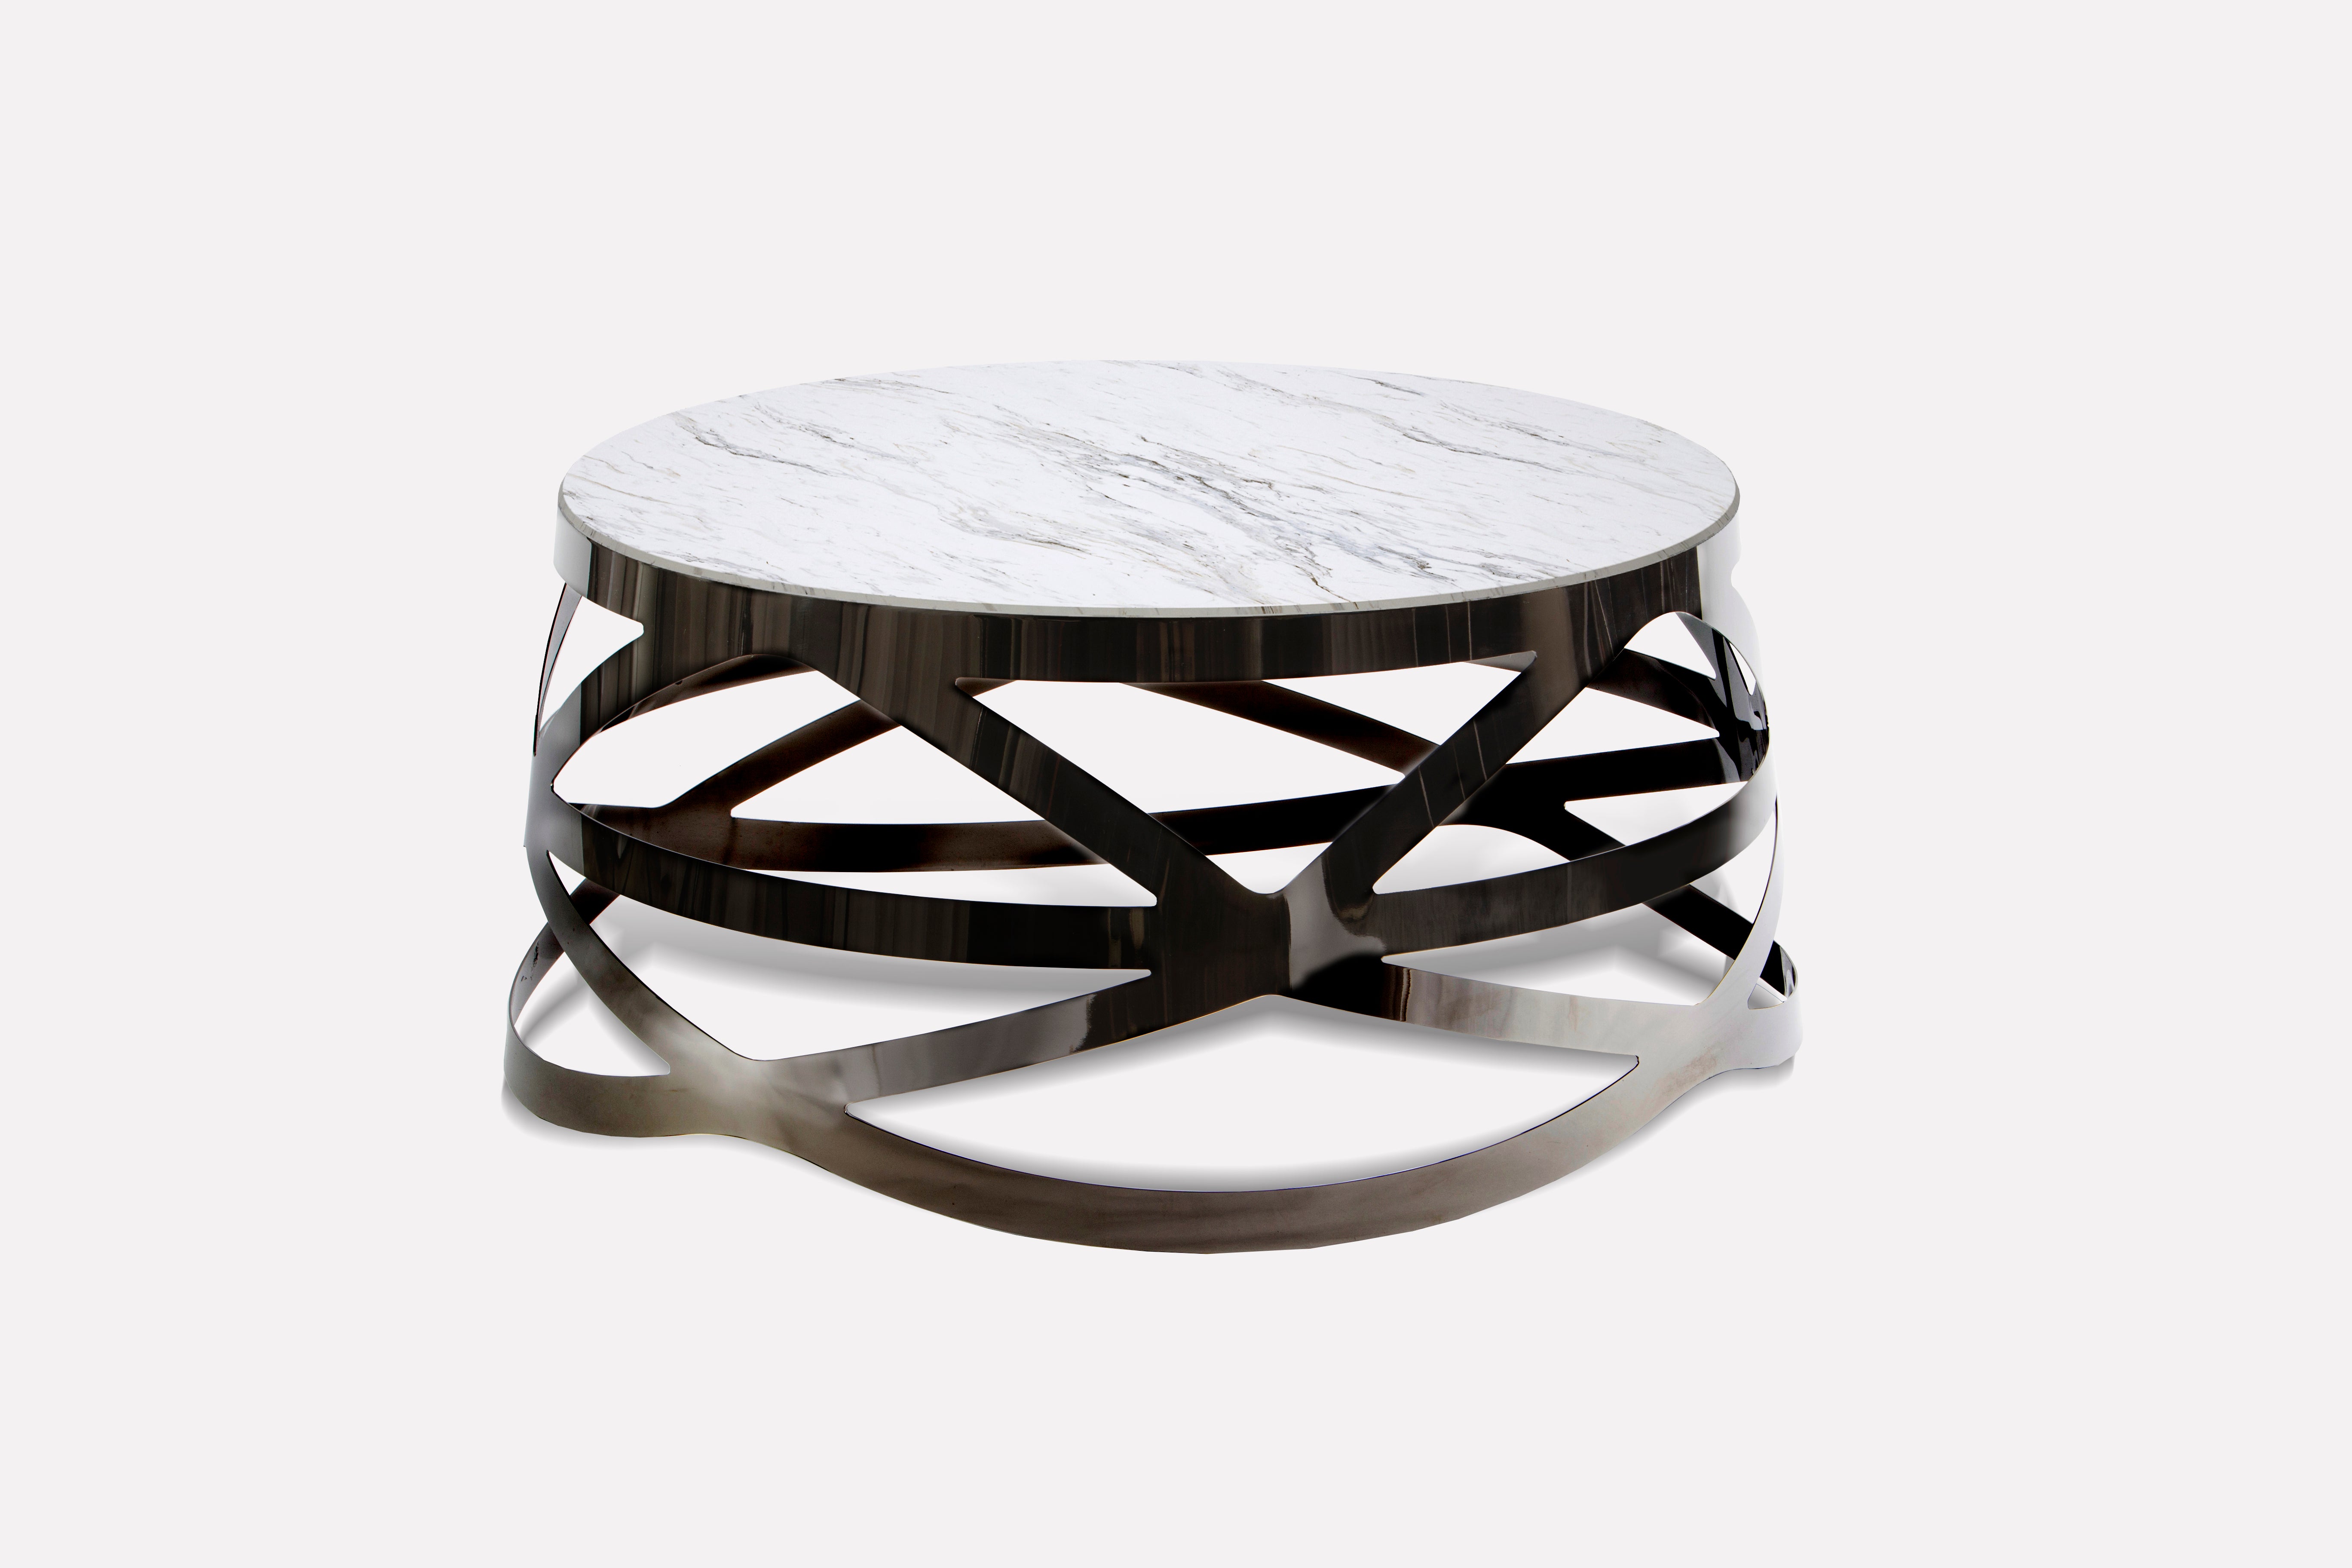 CROWN ROYAL est une table basse avec une structure de base en acier inoxydable semblable à un exosquelette et un plateau en marbre... Cette table basse respire le luxe et excelle par ses finitions lisses qui témoignent d'un travail artisanal